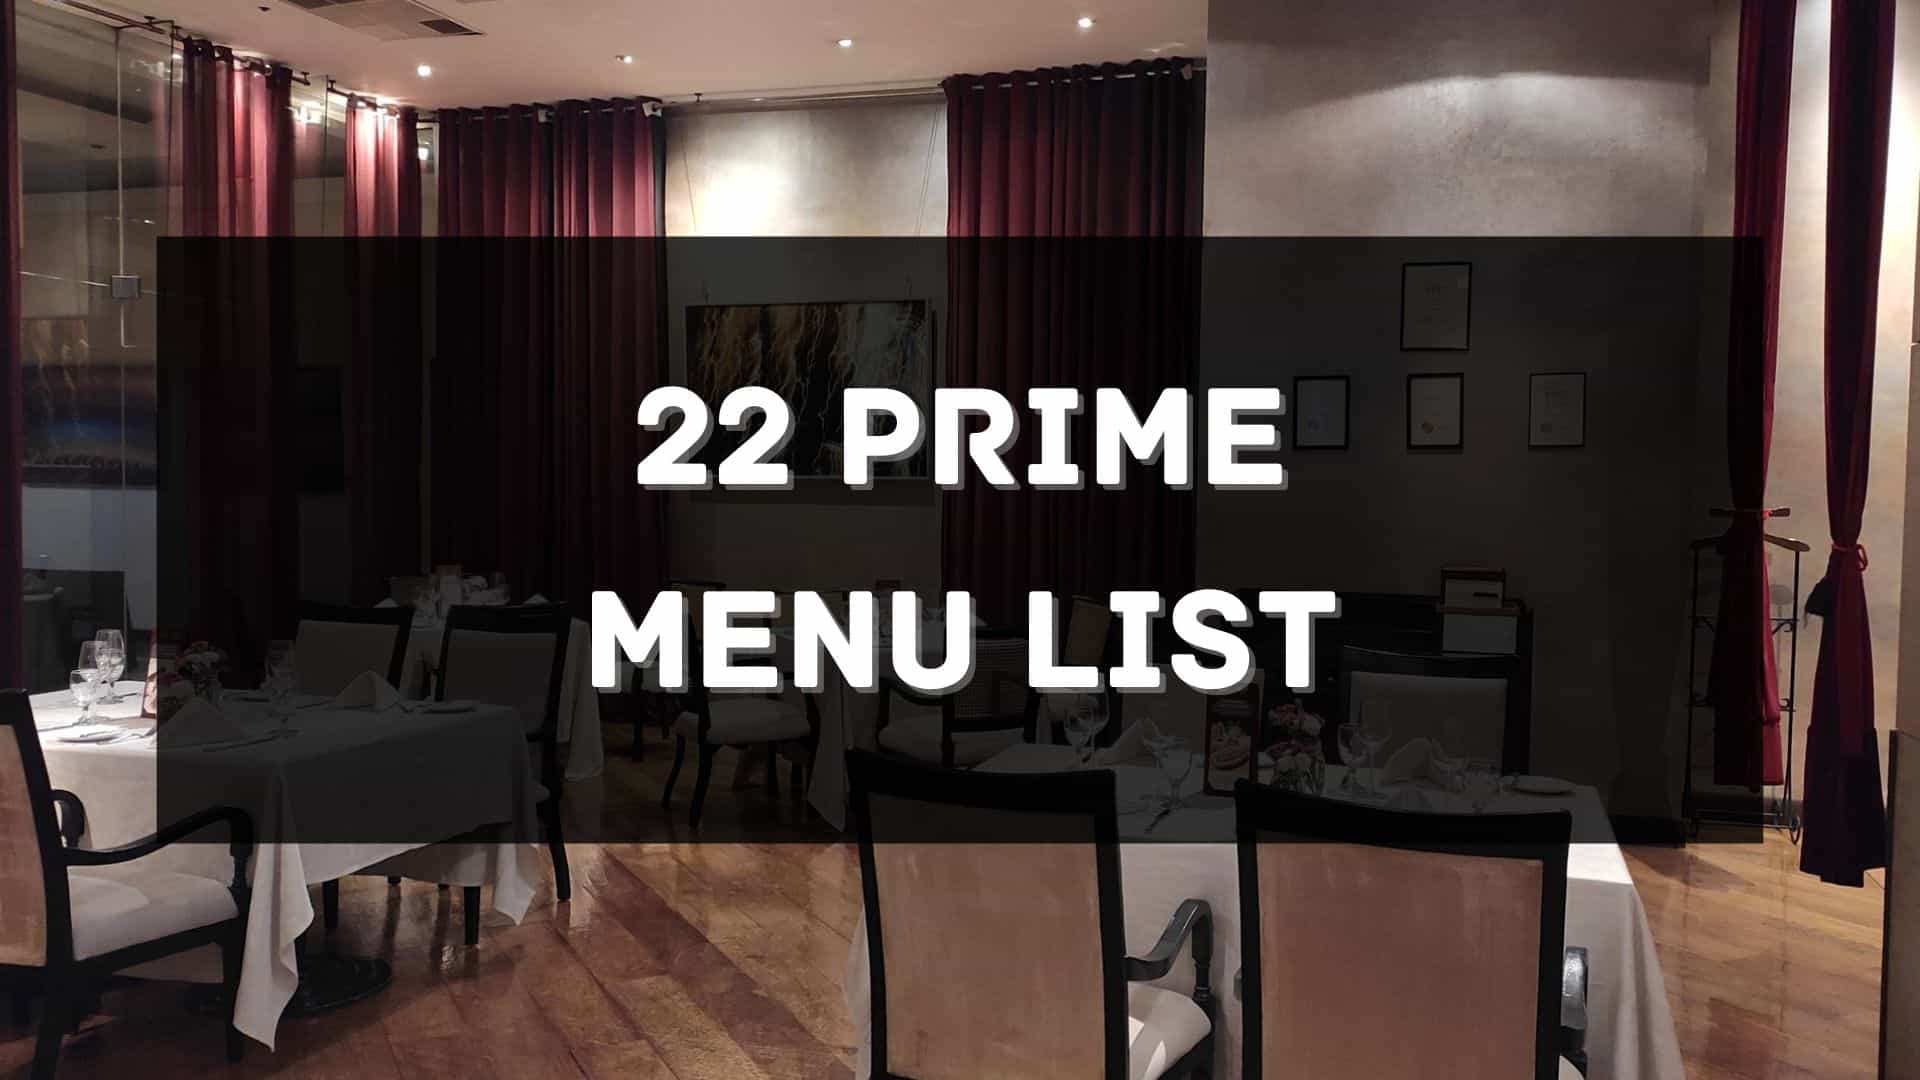 22 prime menu price philippines